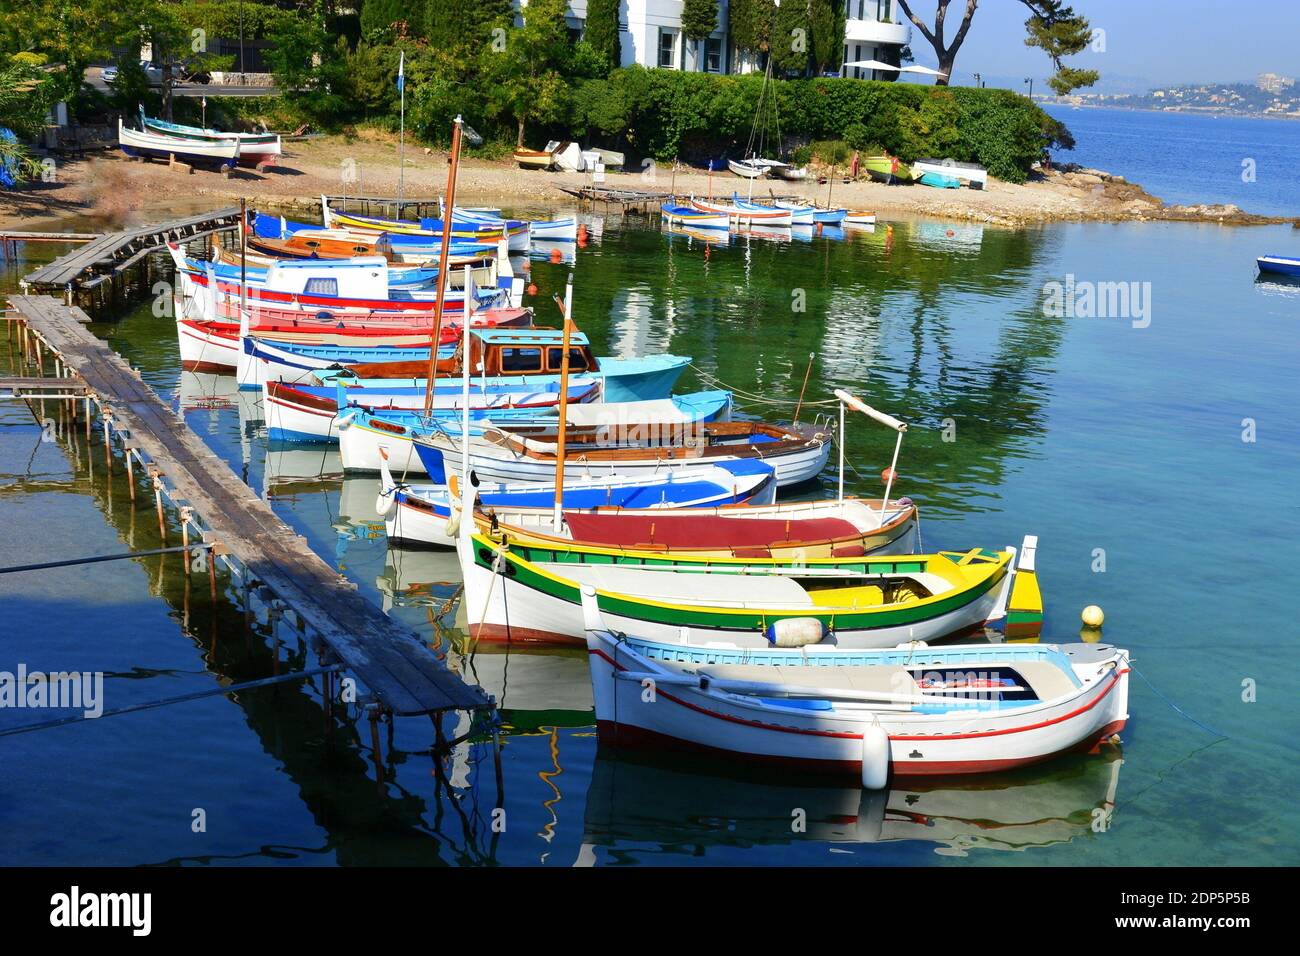 Francia, costa azzurra, Cap d'Antibes, il piccolo e pittoresco porto di Olivette accoglie barche, pointus, da maggio a ottobre in un ambiente bellissimo. Foto Stock